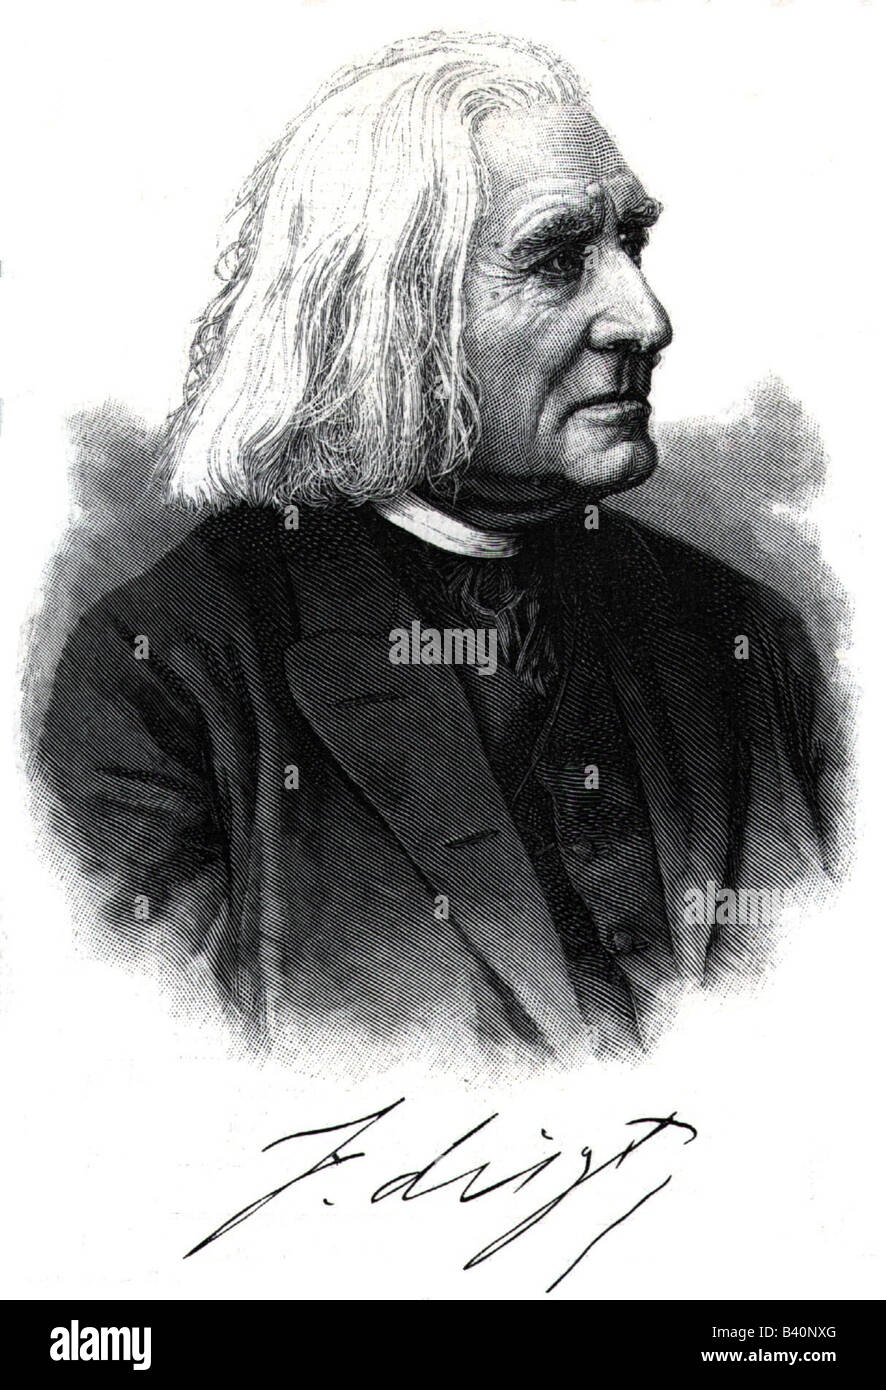 Liszt, Franz, 22.10.1811 - 31.7.1886, compositore e musicista ungherese, ritratto, incisione di L. Foto Stock